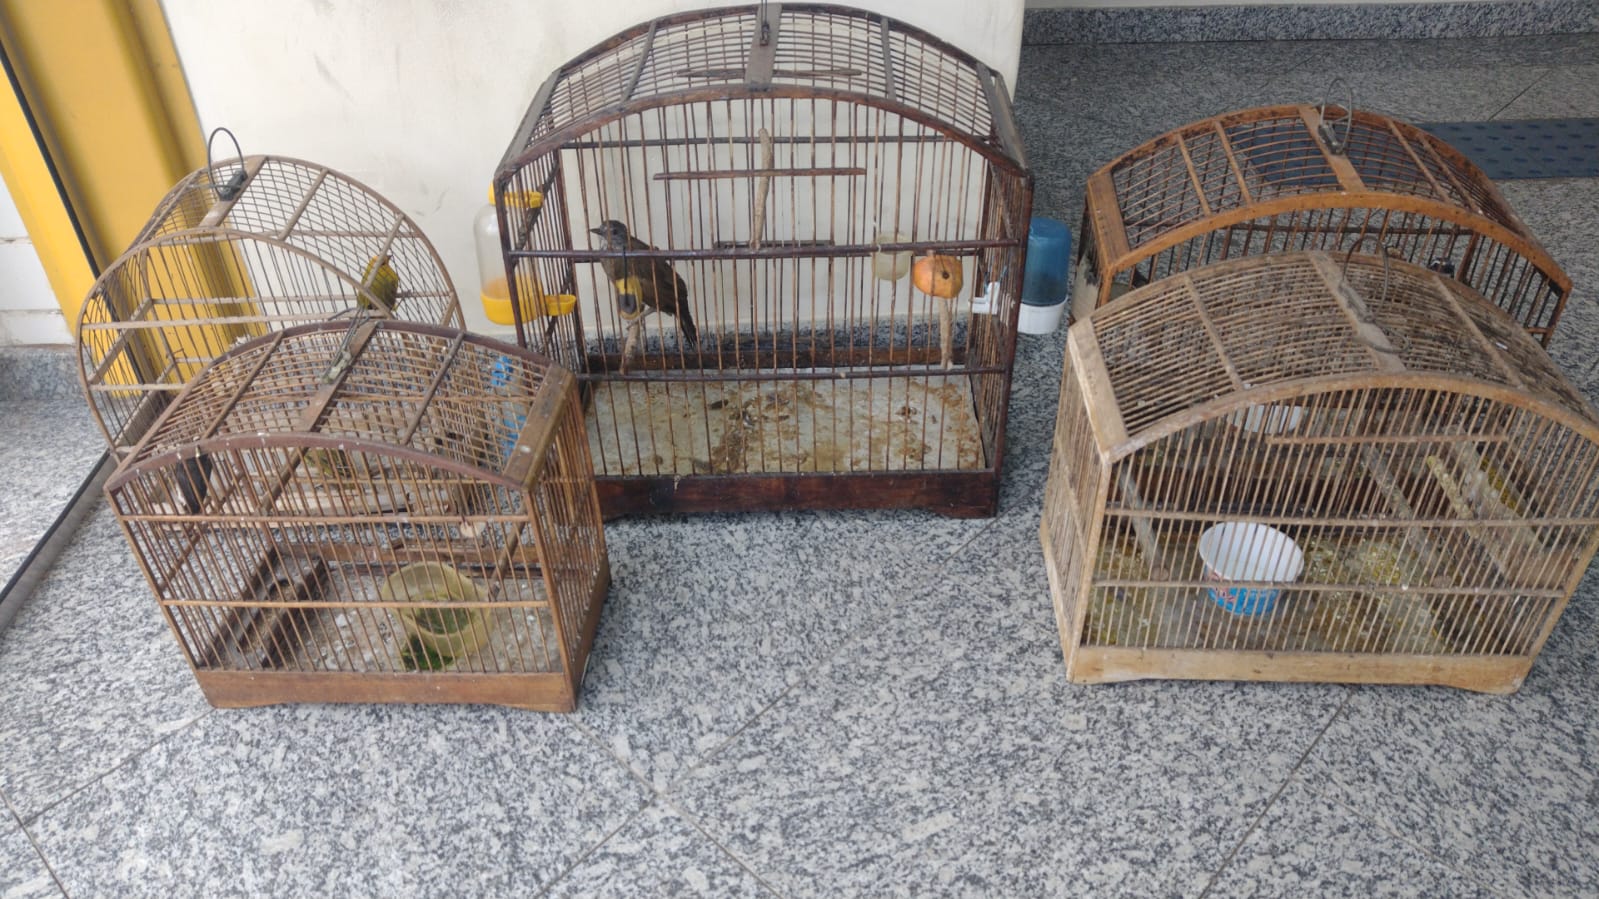 Seis pássaros mantidos em cativeiro são resgatados em Barra do Piraí após denúncia feita ao Linha Verde 